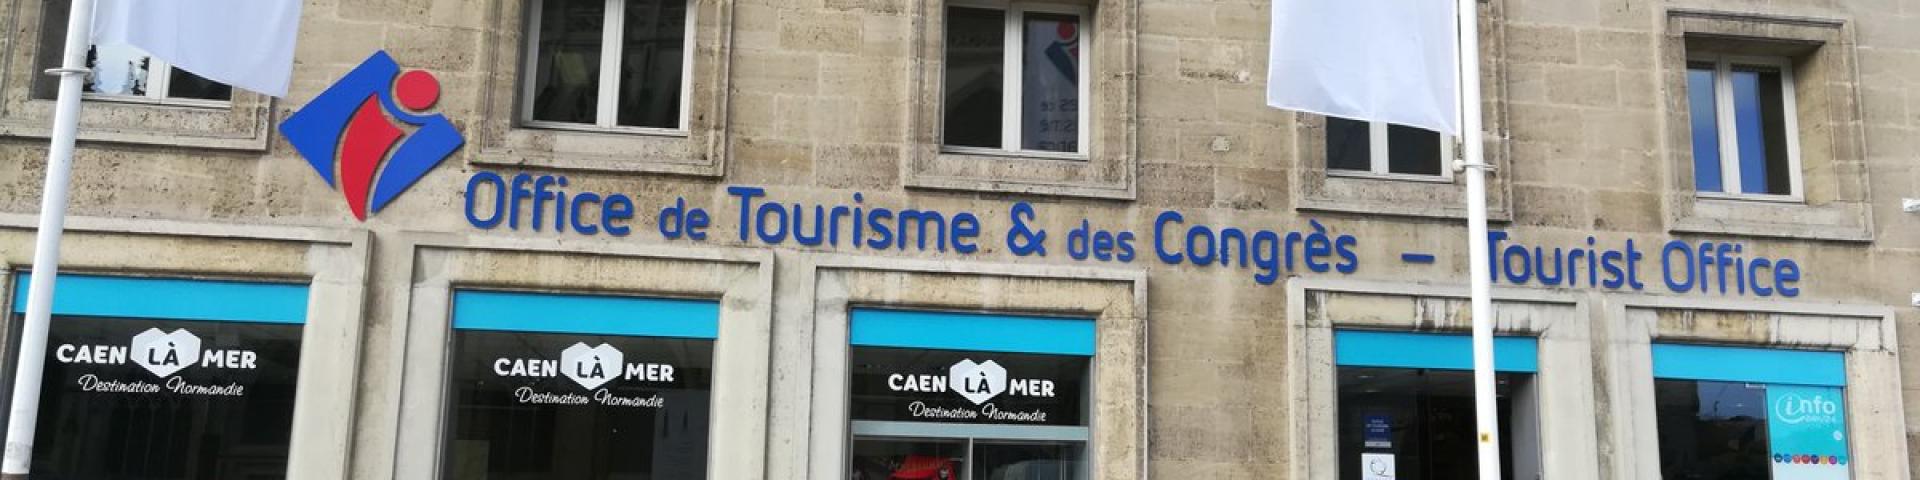 Office de tourisme Caen - Builders - Partenaires